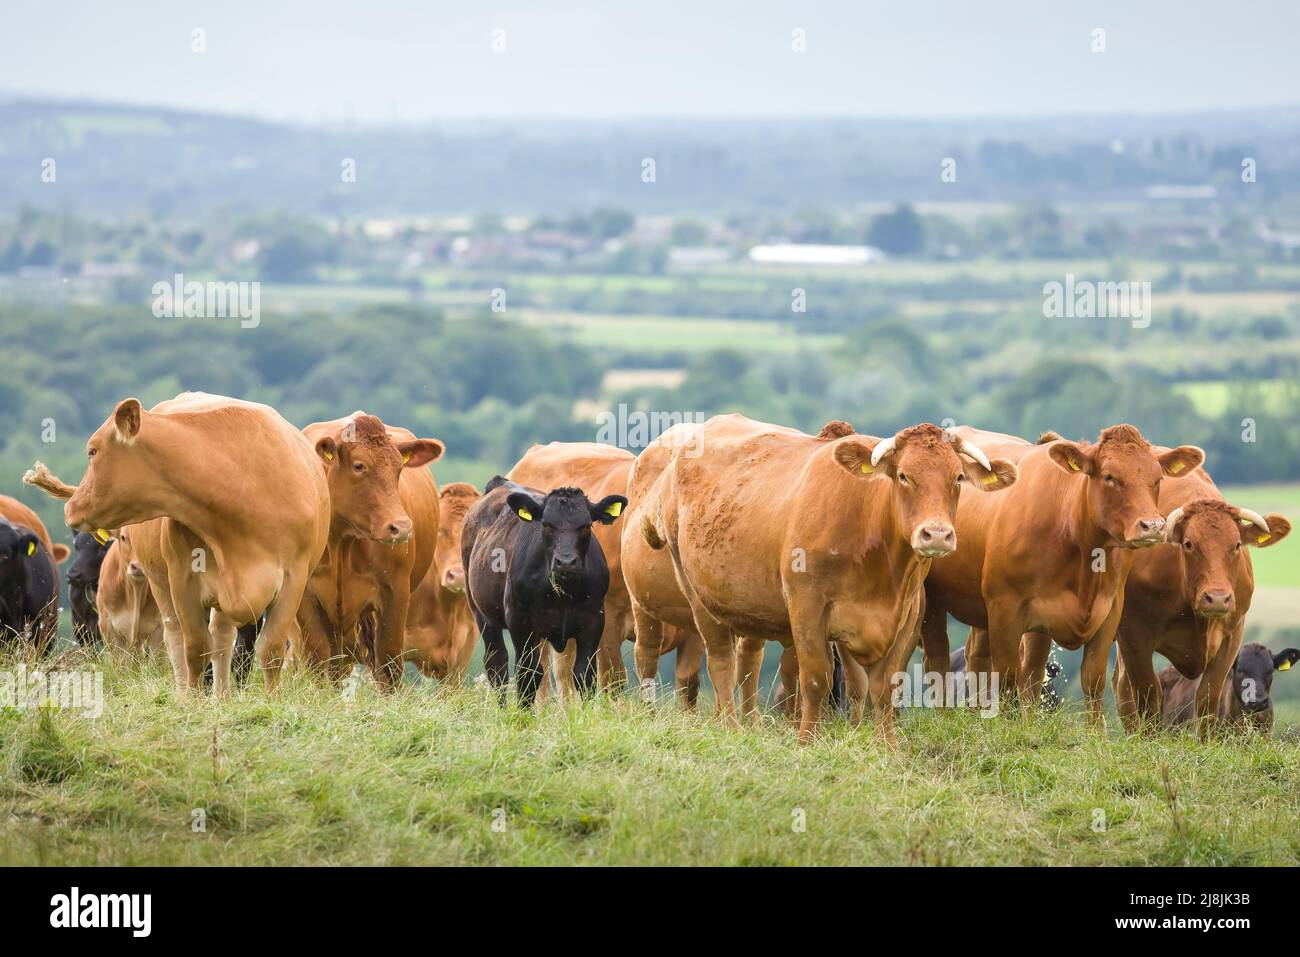 Mandria di mucche, Hereford bovini da carne con vitelli. Bestiame in un campo su una fattoria. Aylesbury vale, Buckinghamshire, Regno Unito Foto Stock